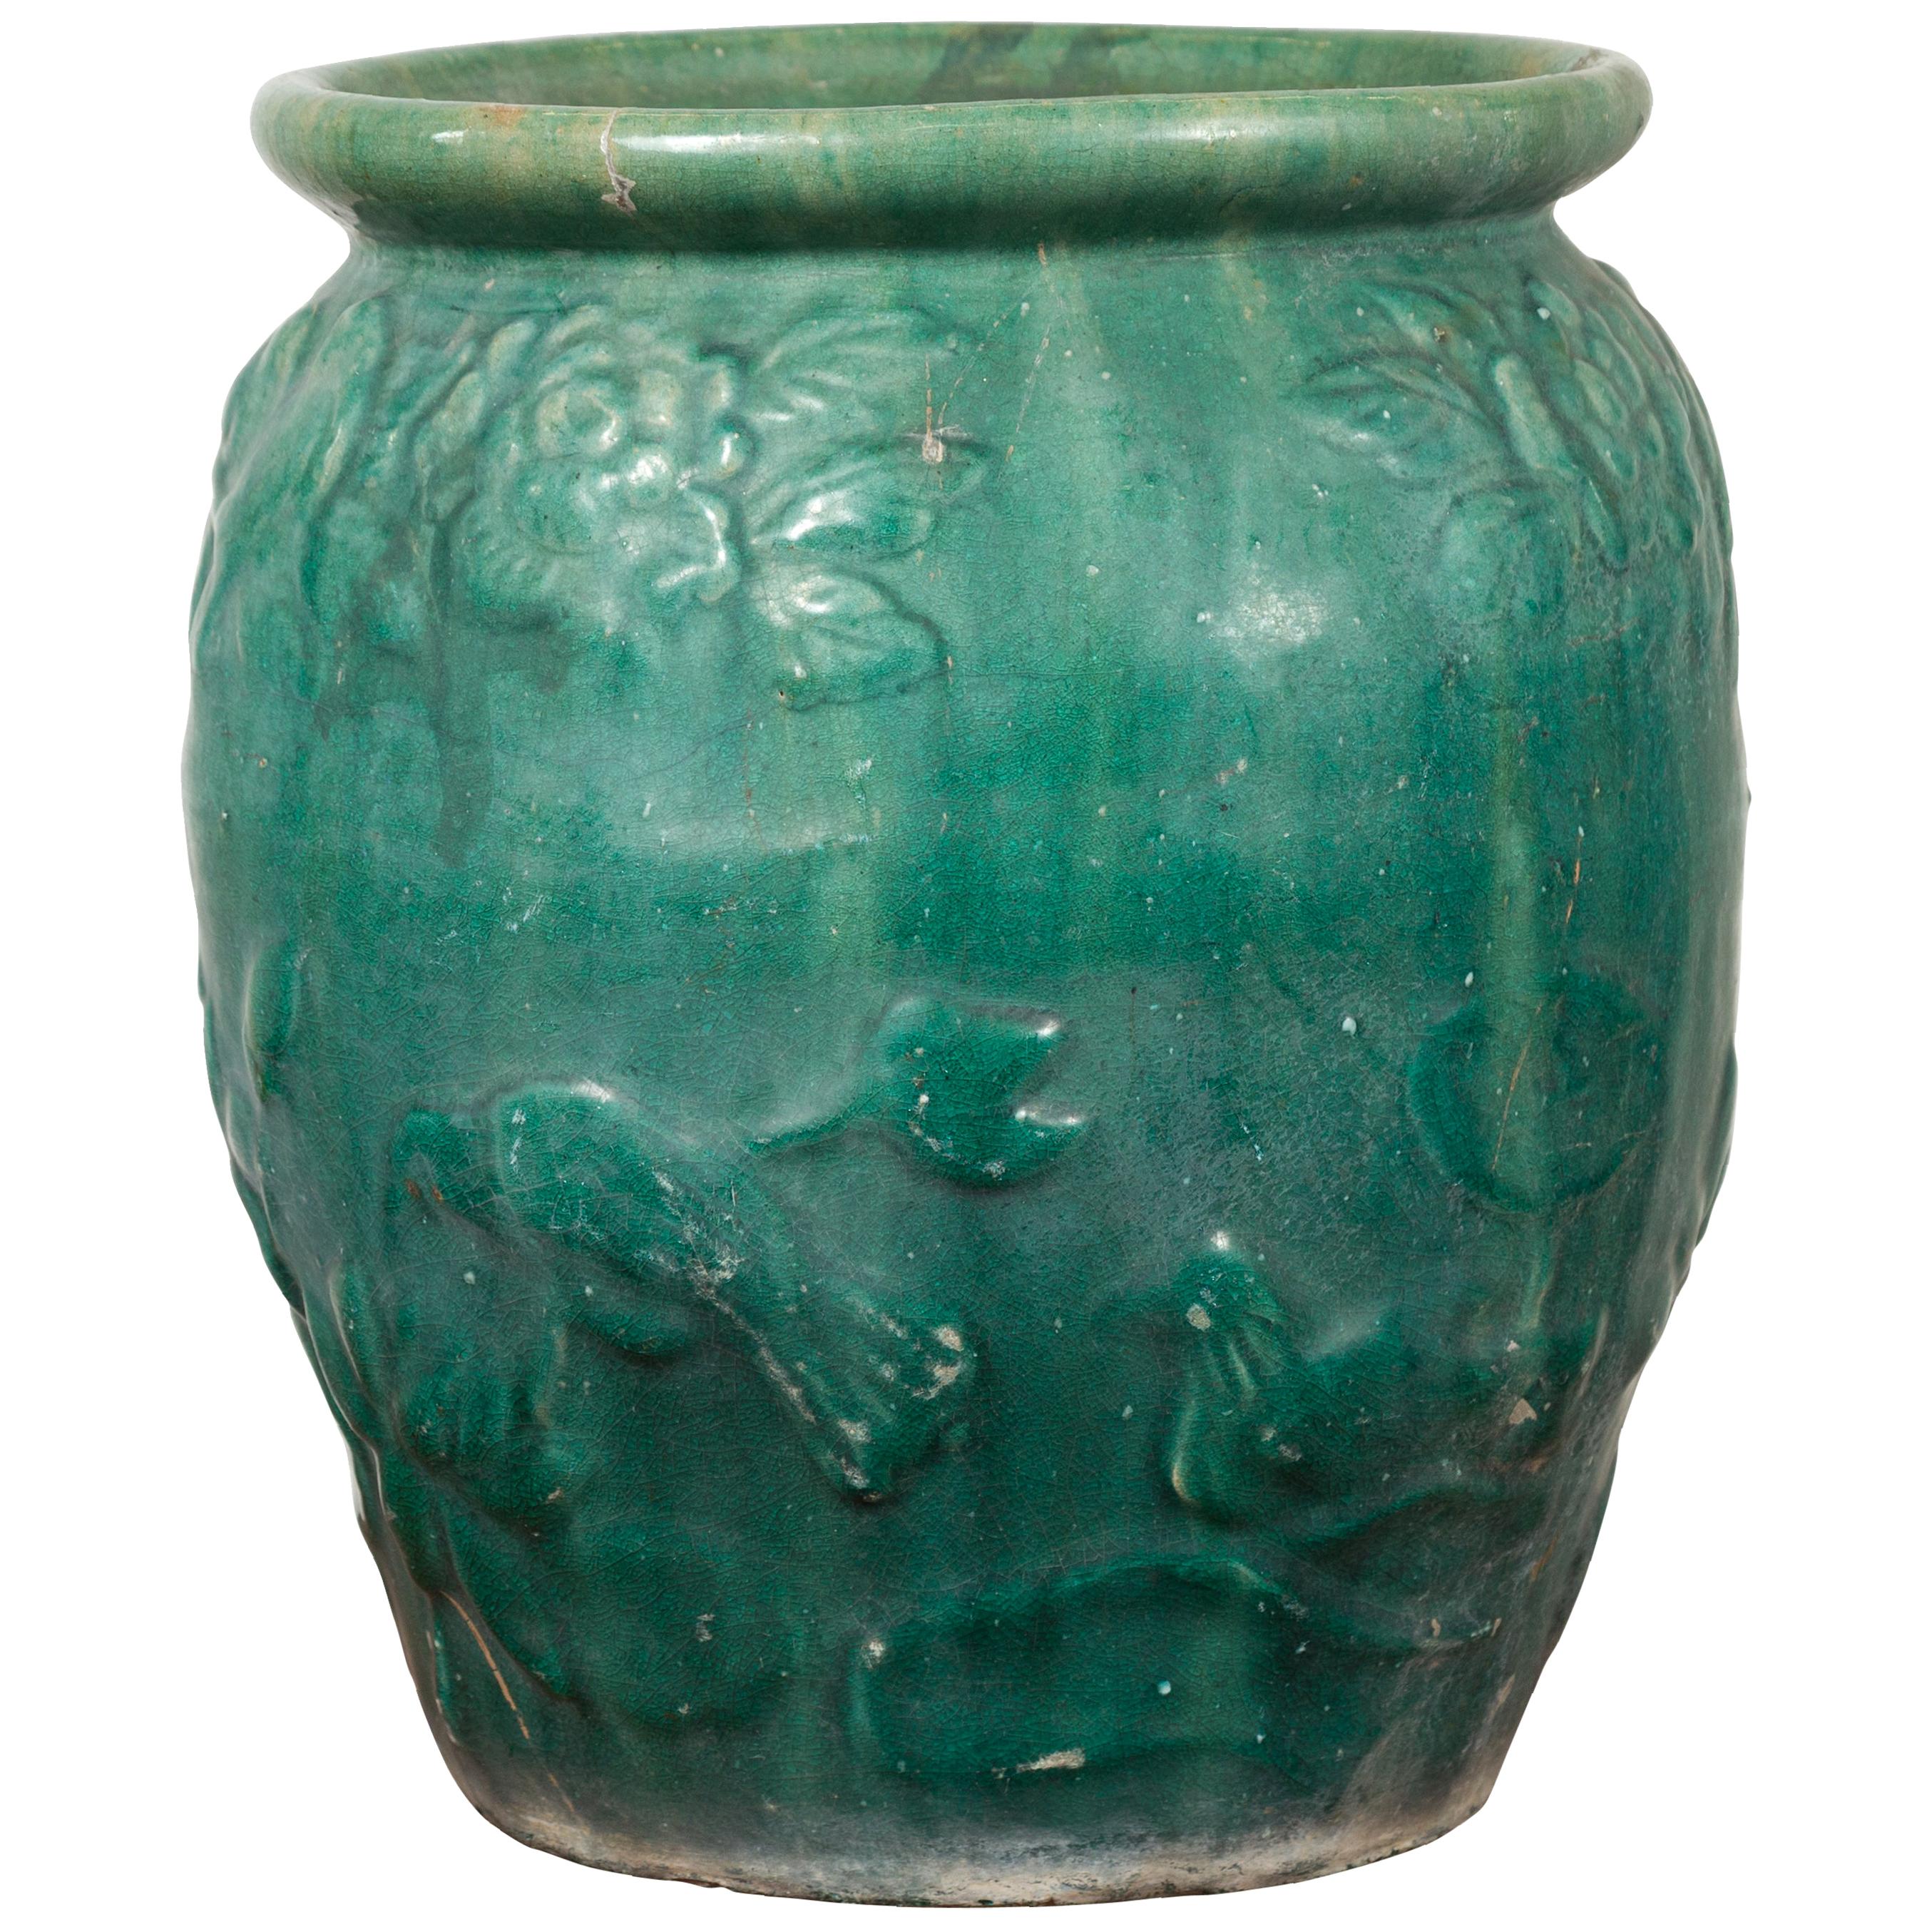 Vase chinois vintage émaillé vert avec motifs floraux et oiseaux en relief